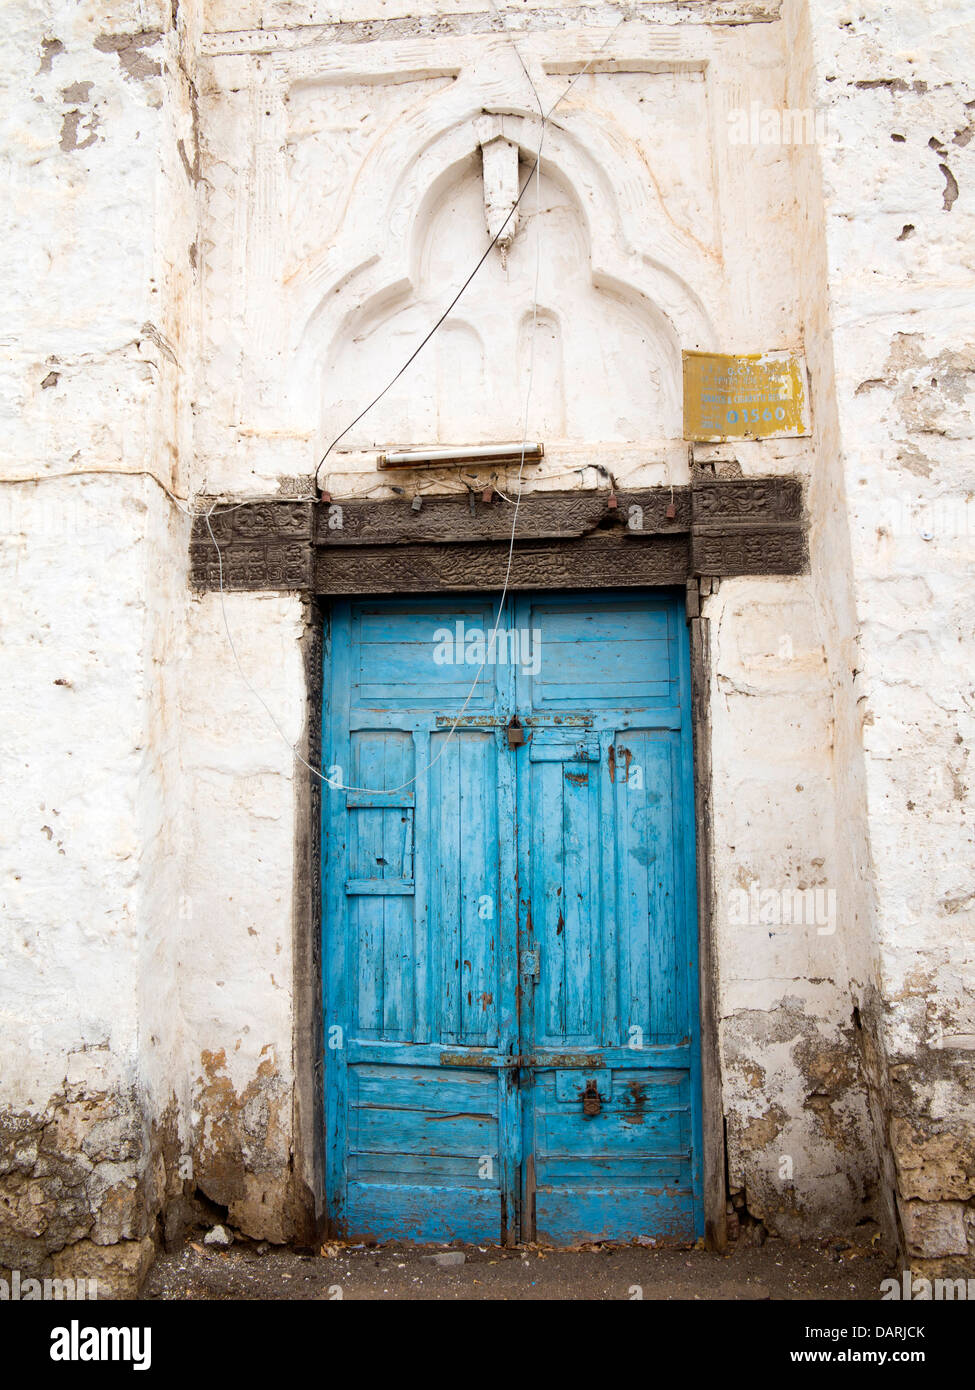 Afrika, Eritrea, Massawa, Old Town, blau bemalten Tür und verzierten Türsturz des baufälligen Gebäudes geschnitzt Stockfoto